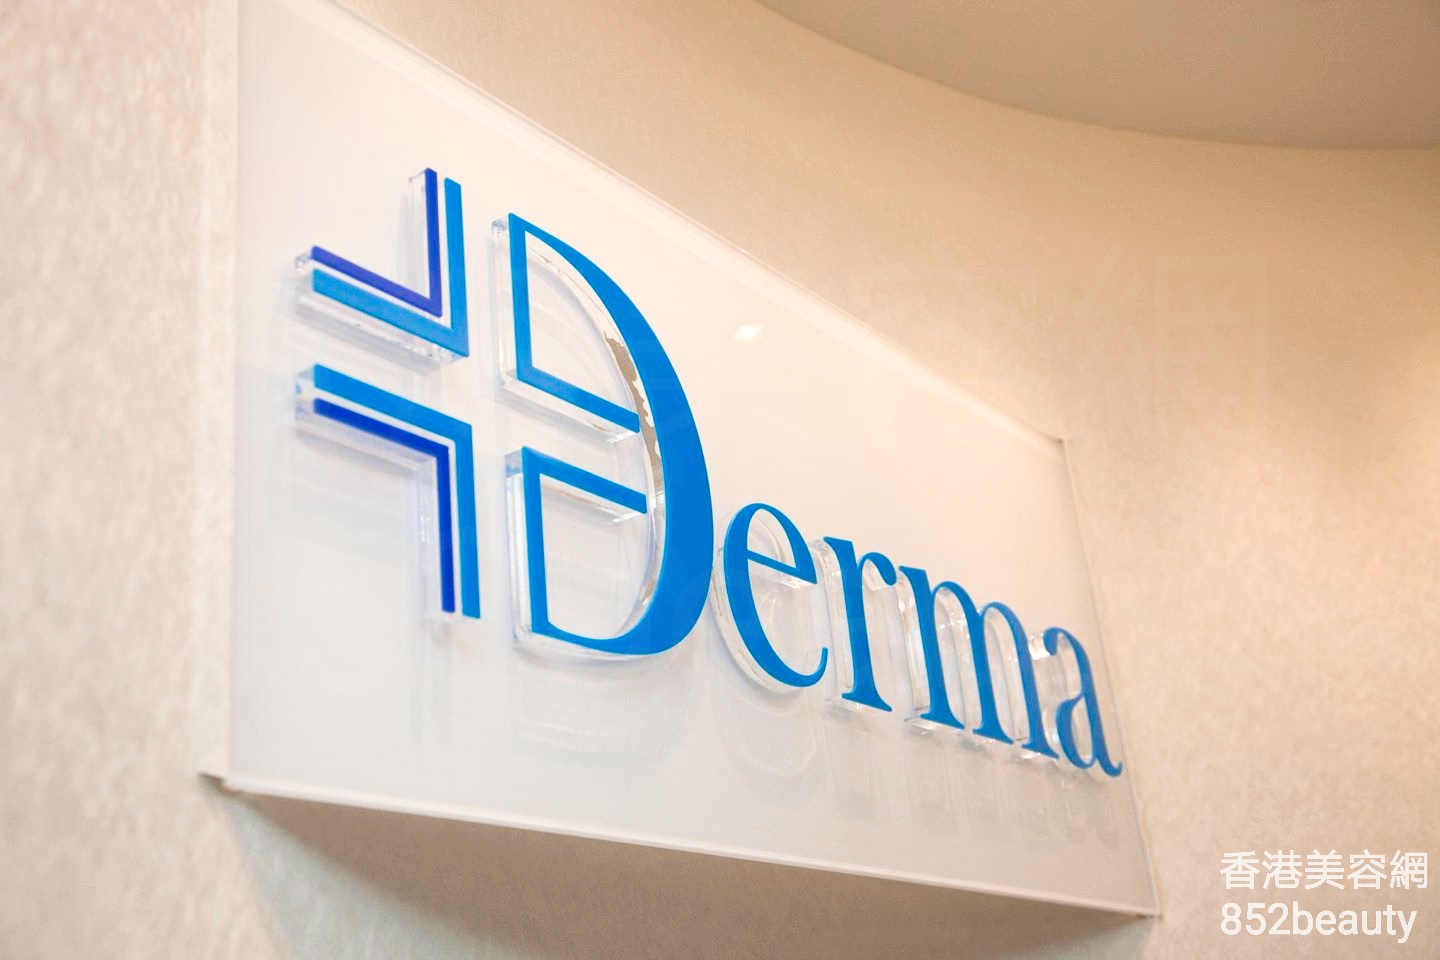 : Derma Cos-medic